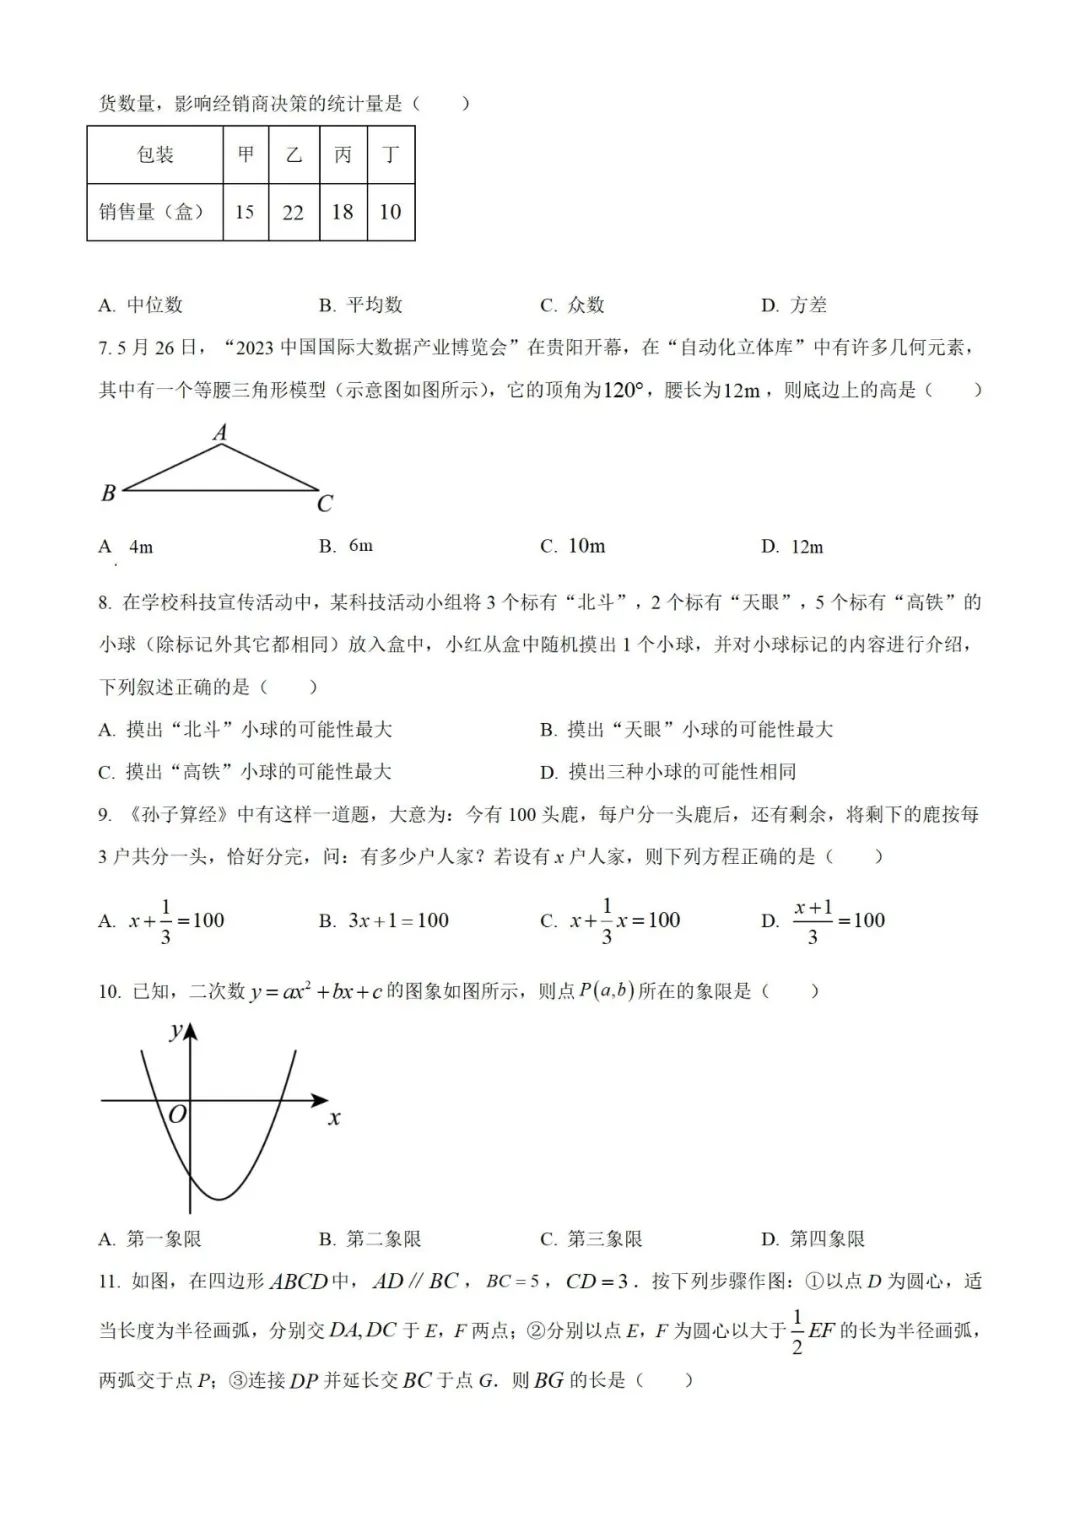 【中考真题】2023年贵州省中考数学真题 (带答案解析) 第2张